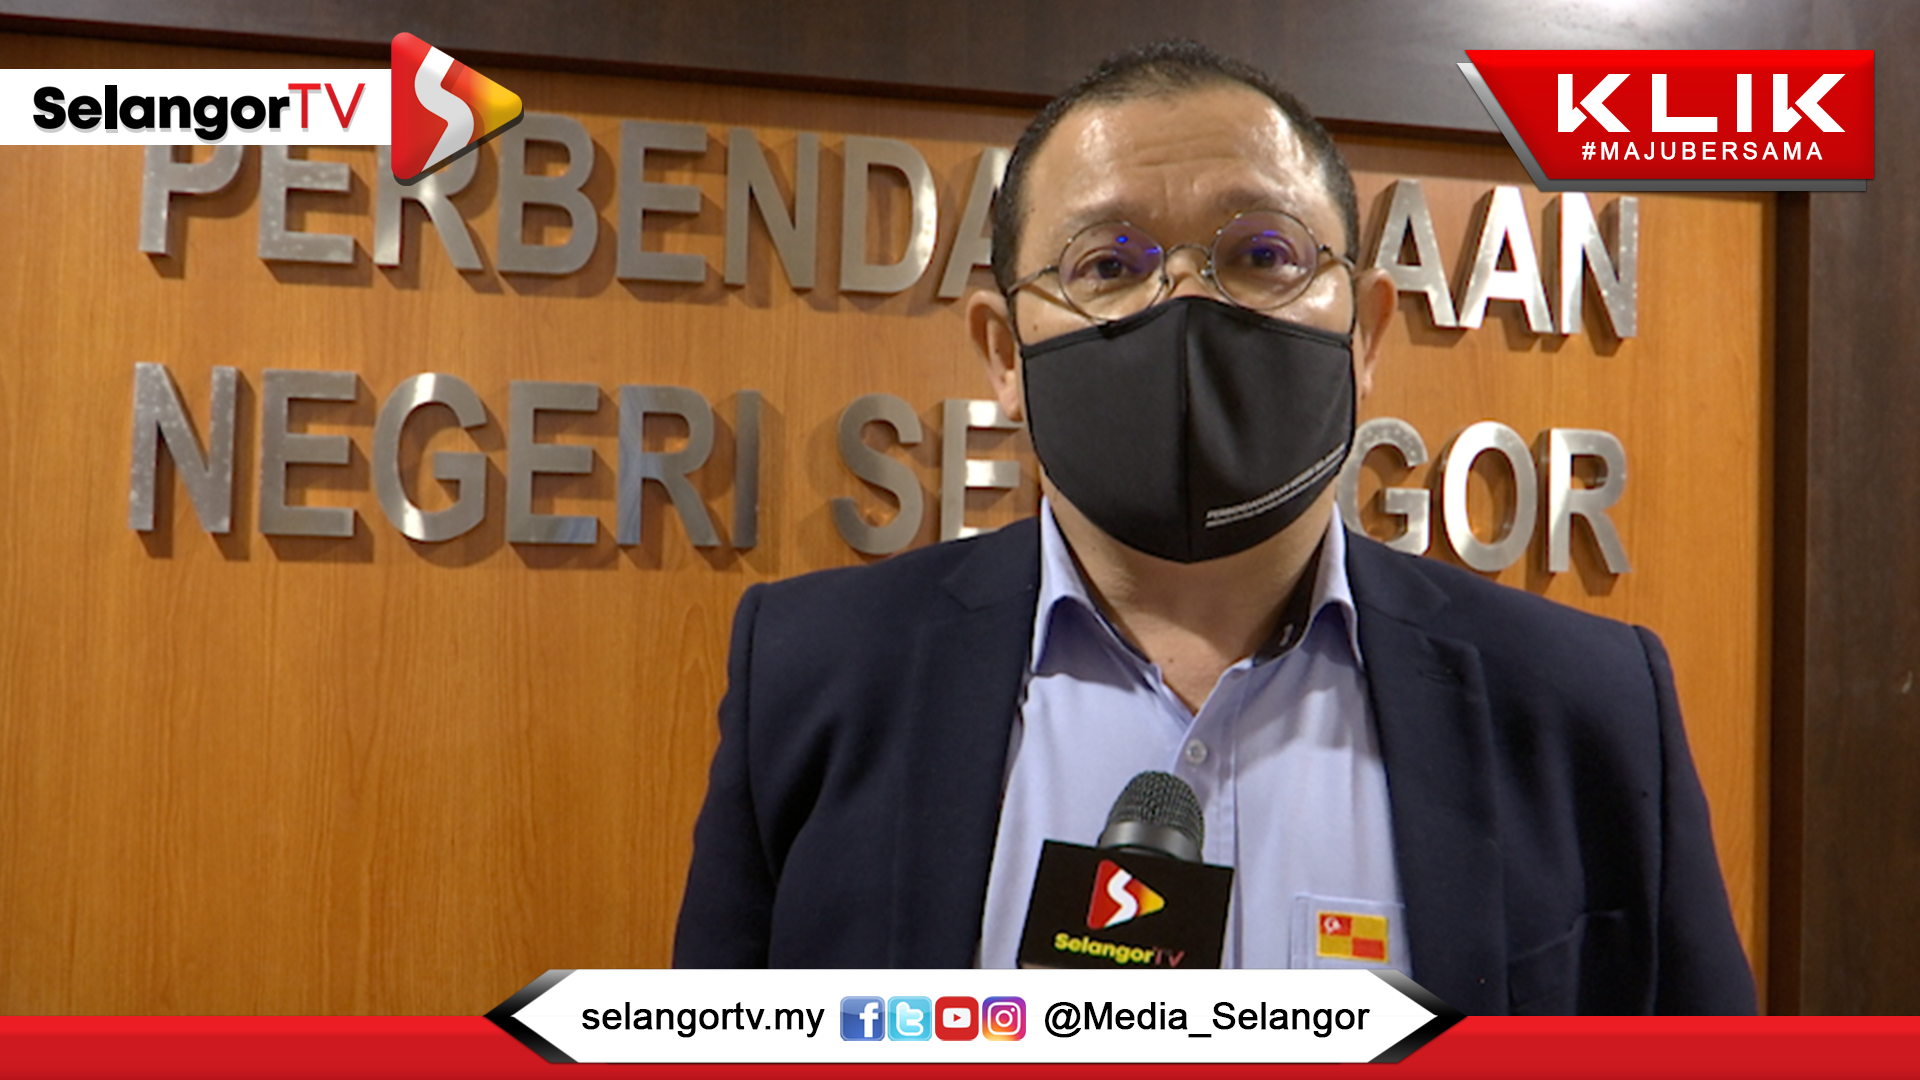 Salur dana ke Bendahari Selangor, elak penipuan  SelangorTV